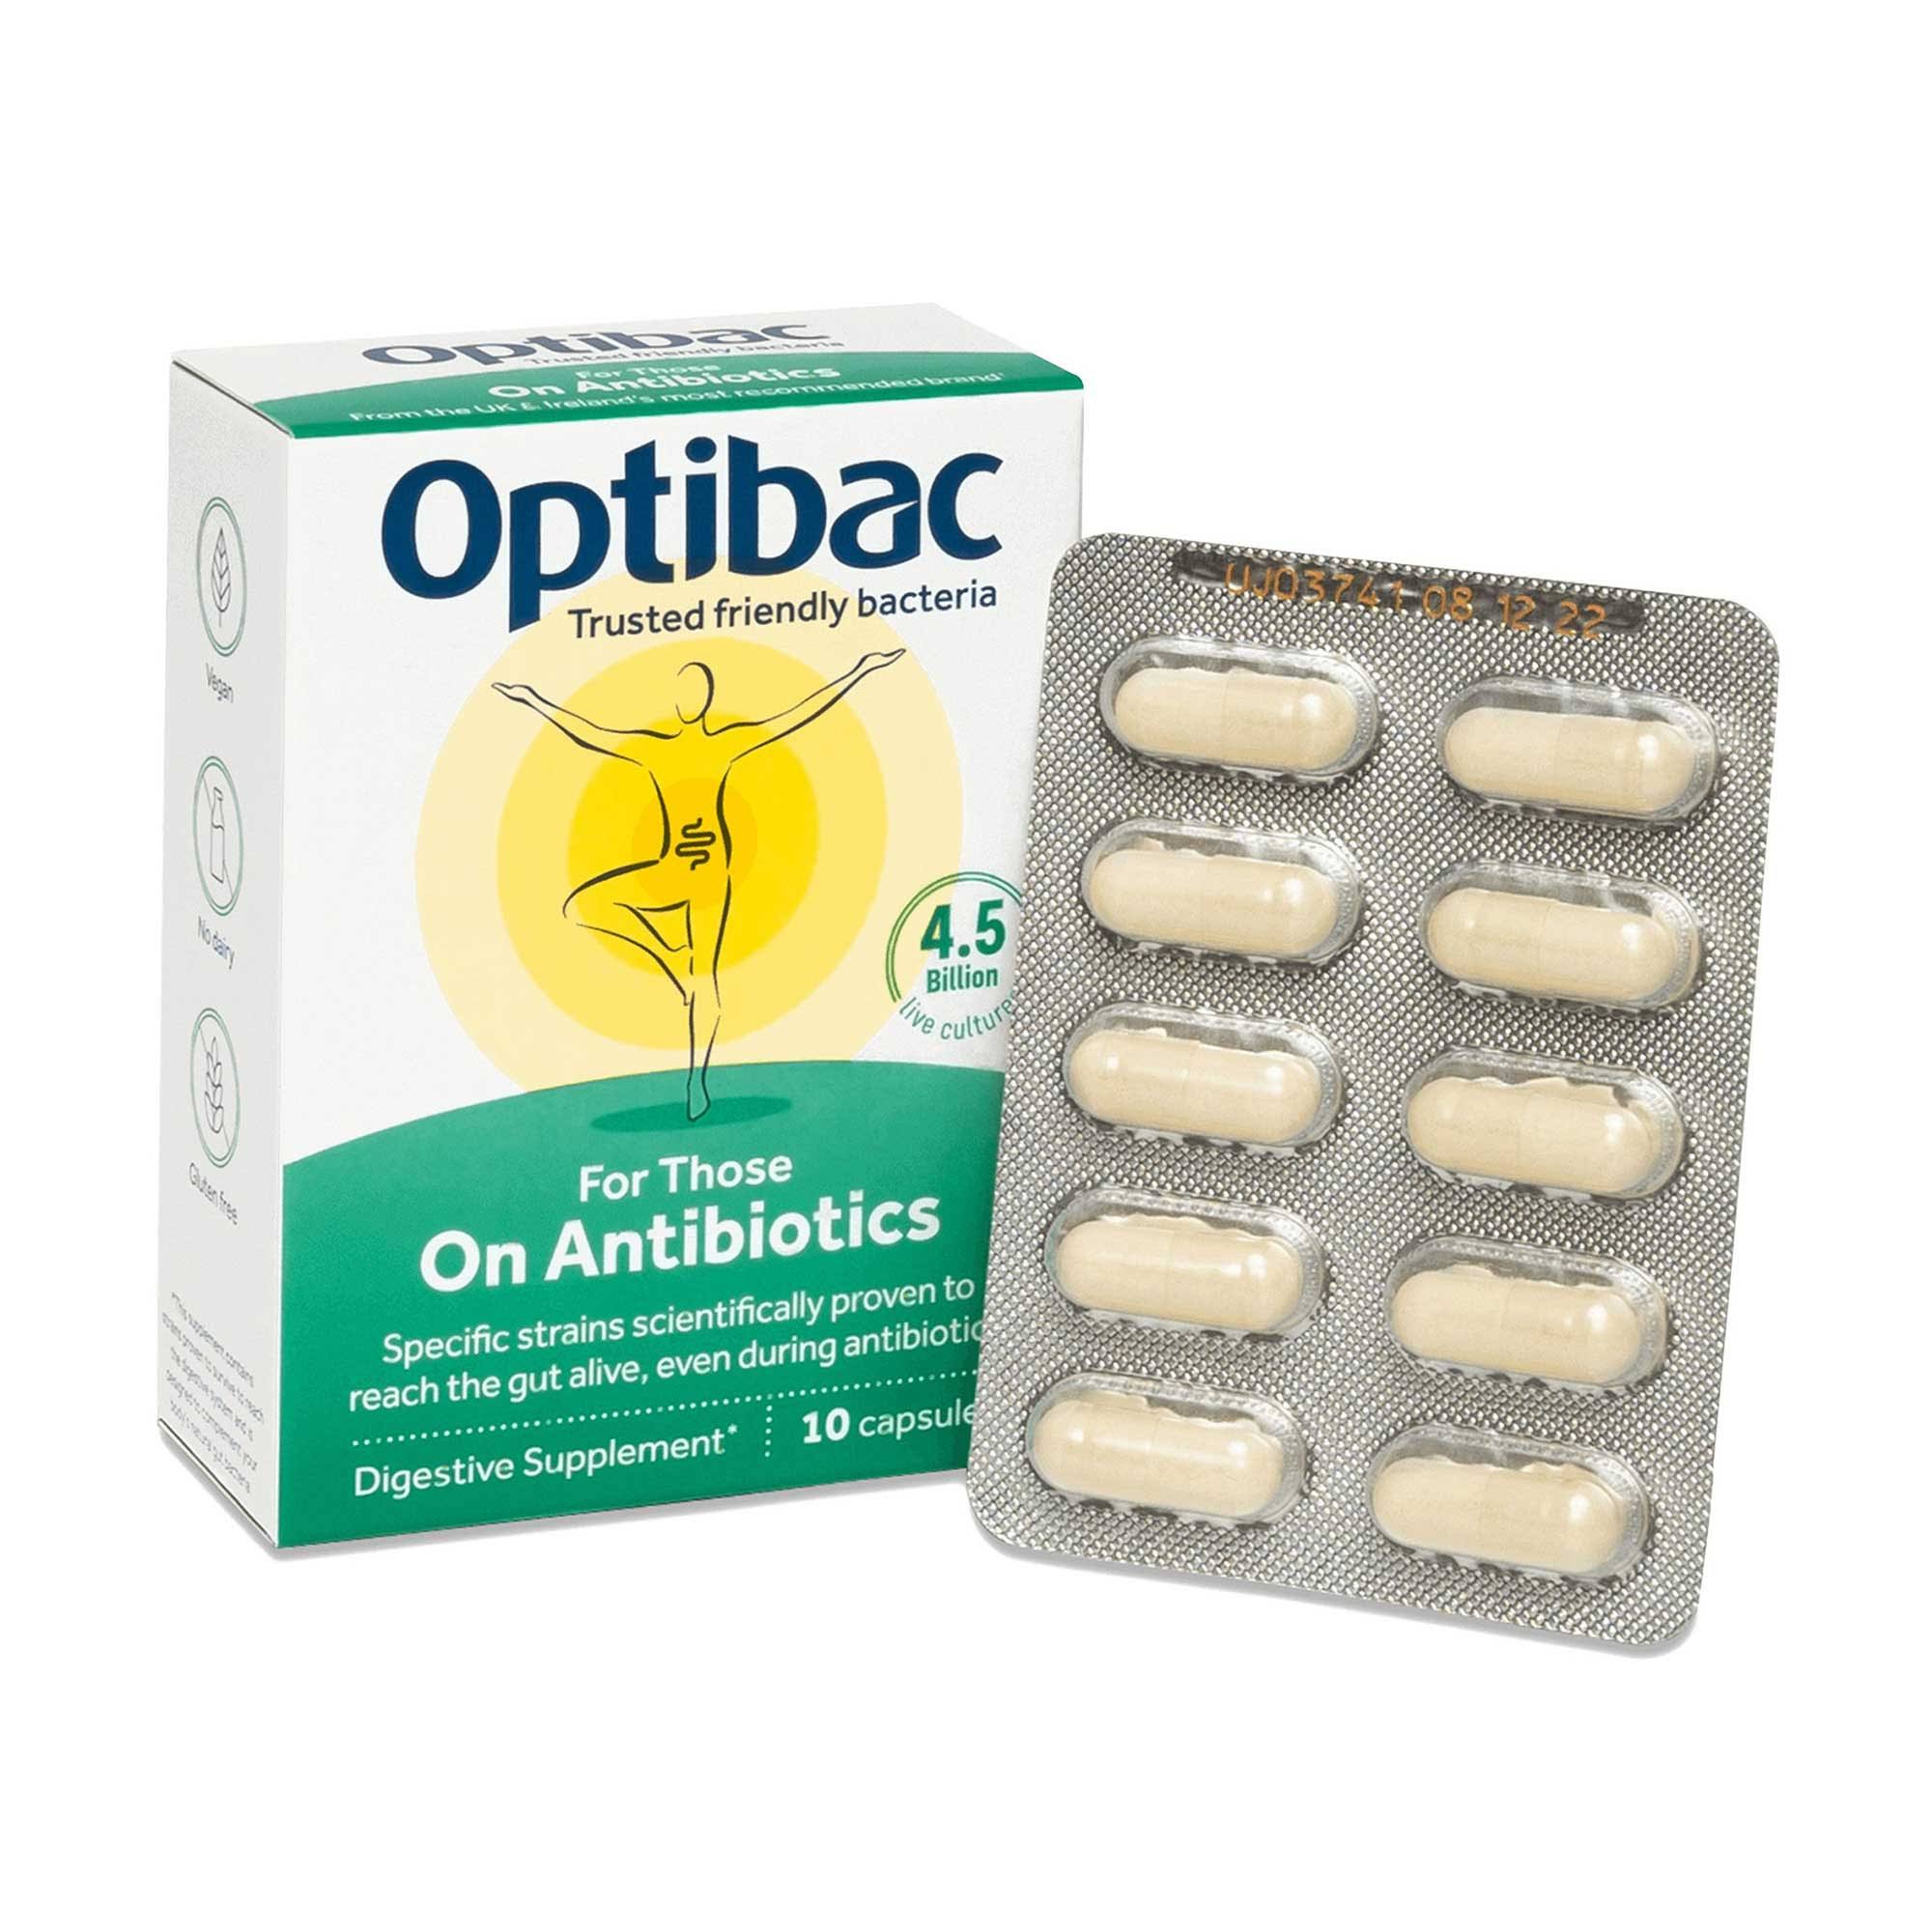 Optibac Probiotics For Those on Antibiotics - 10 Capsules